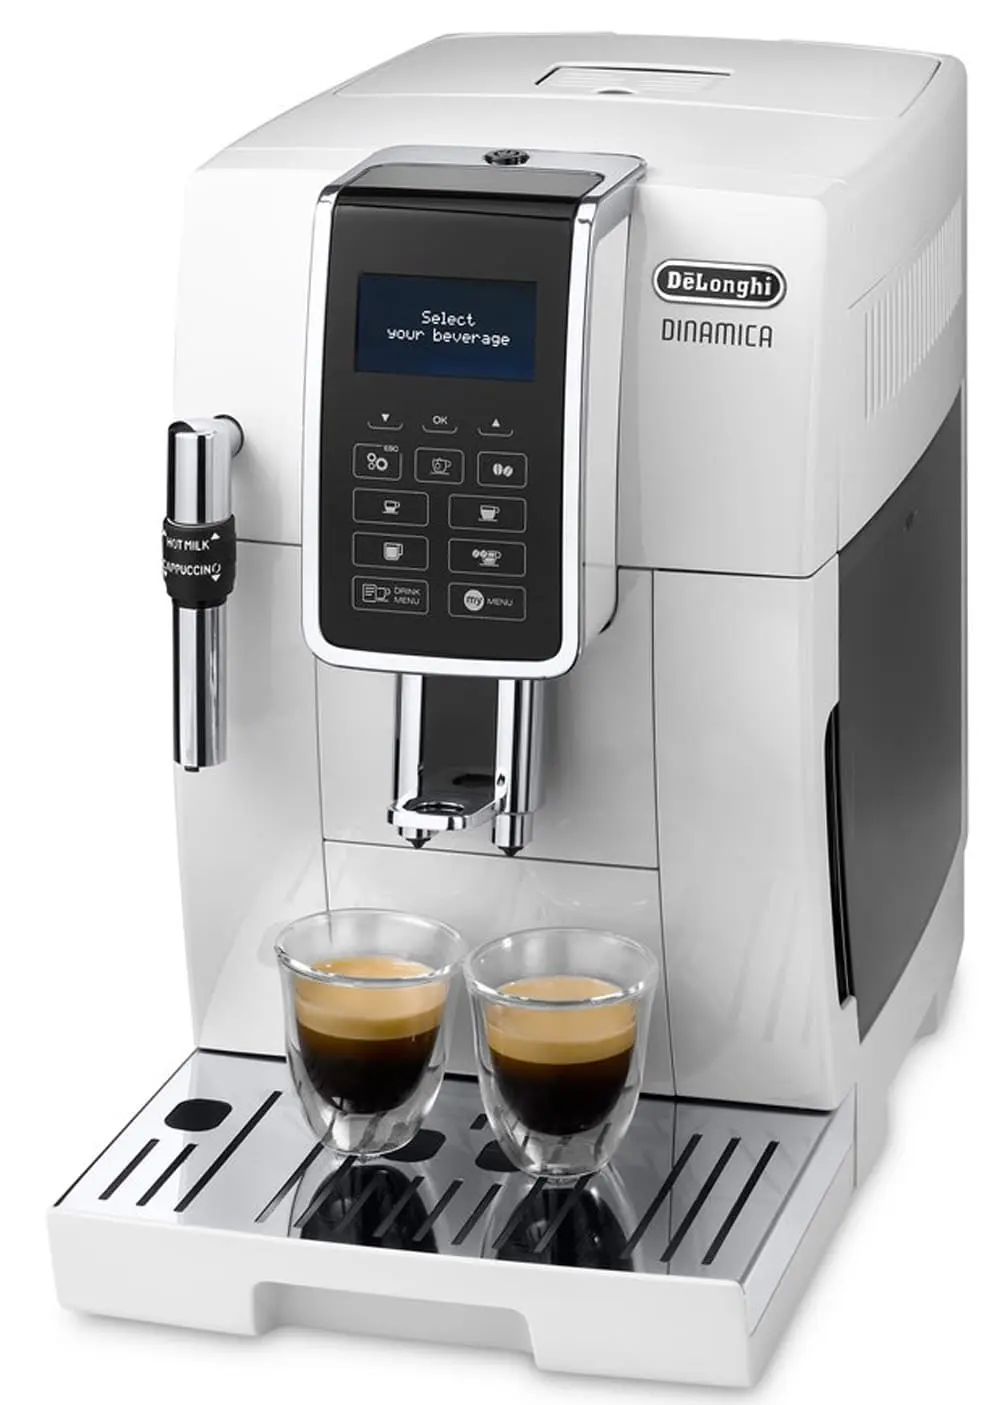 Machine à café De'Longhi Dinamica 3535 blanc vue de côté avec 2 tasses à café